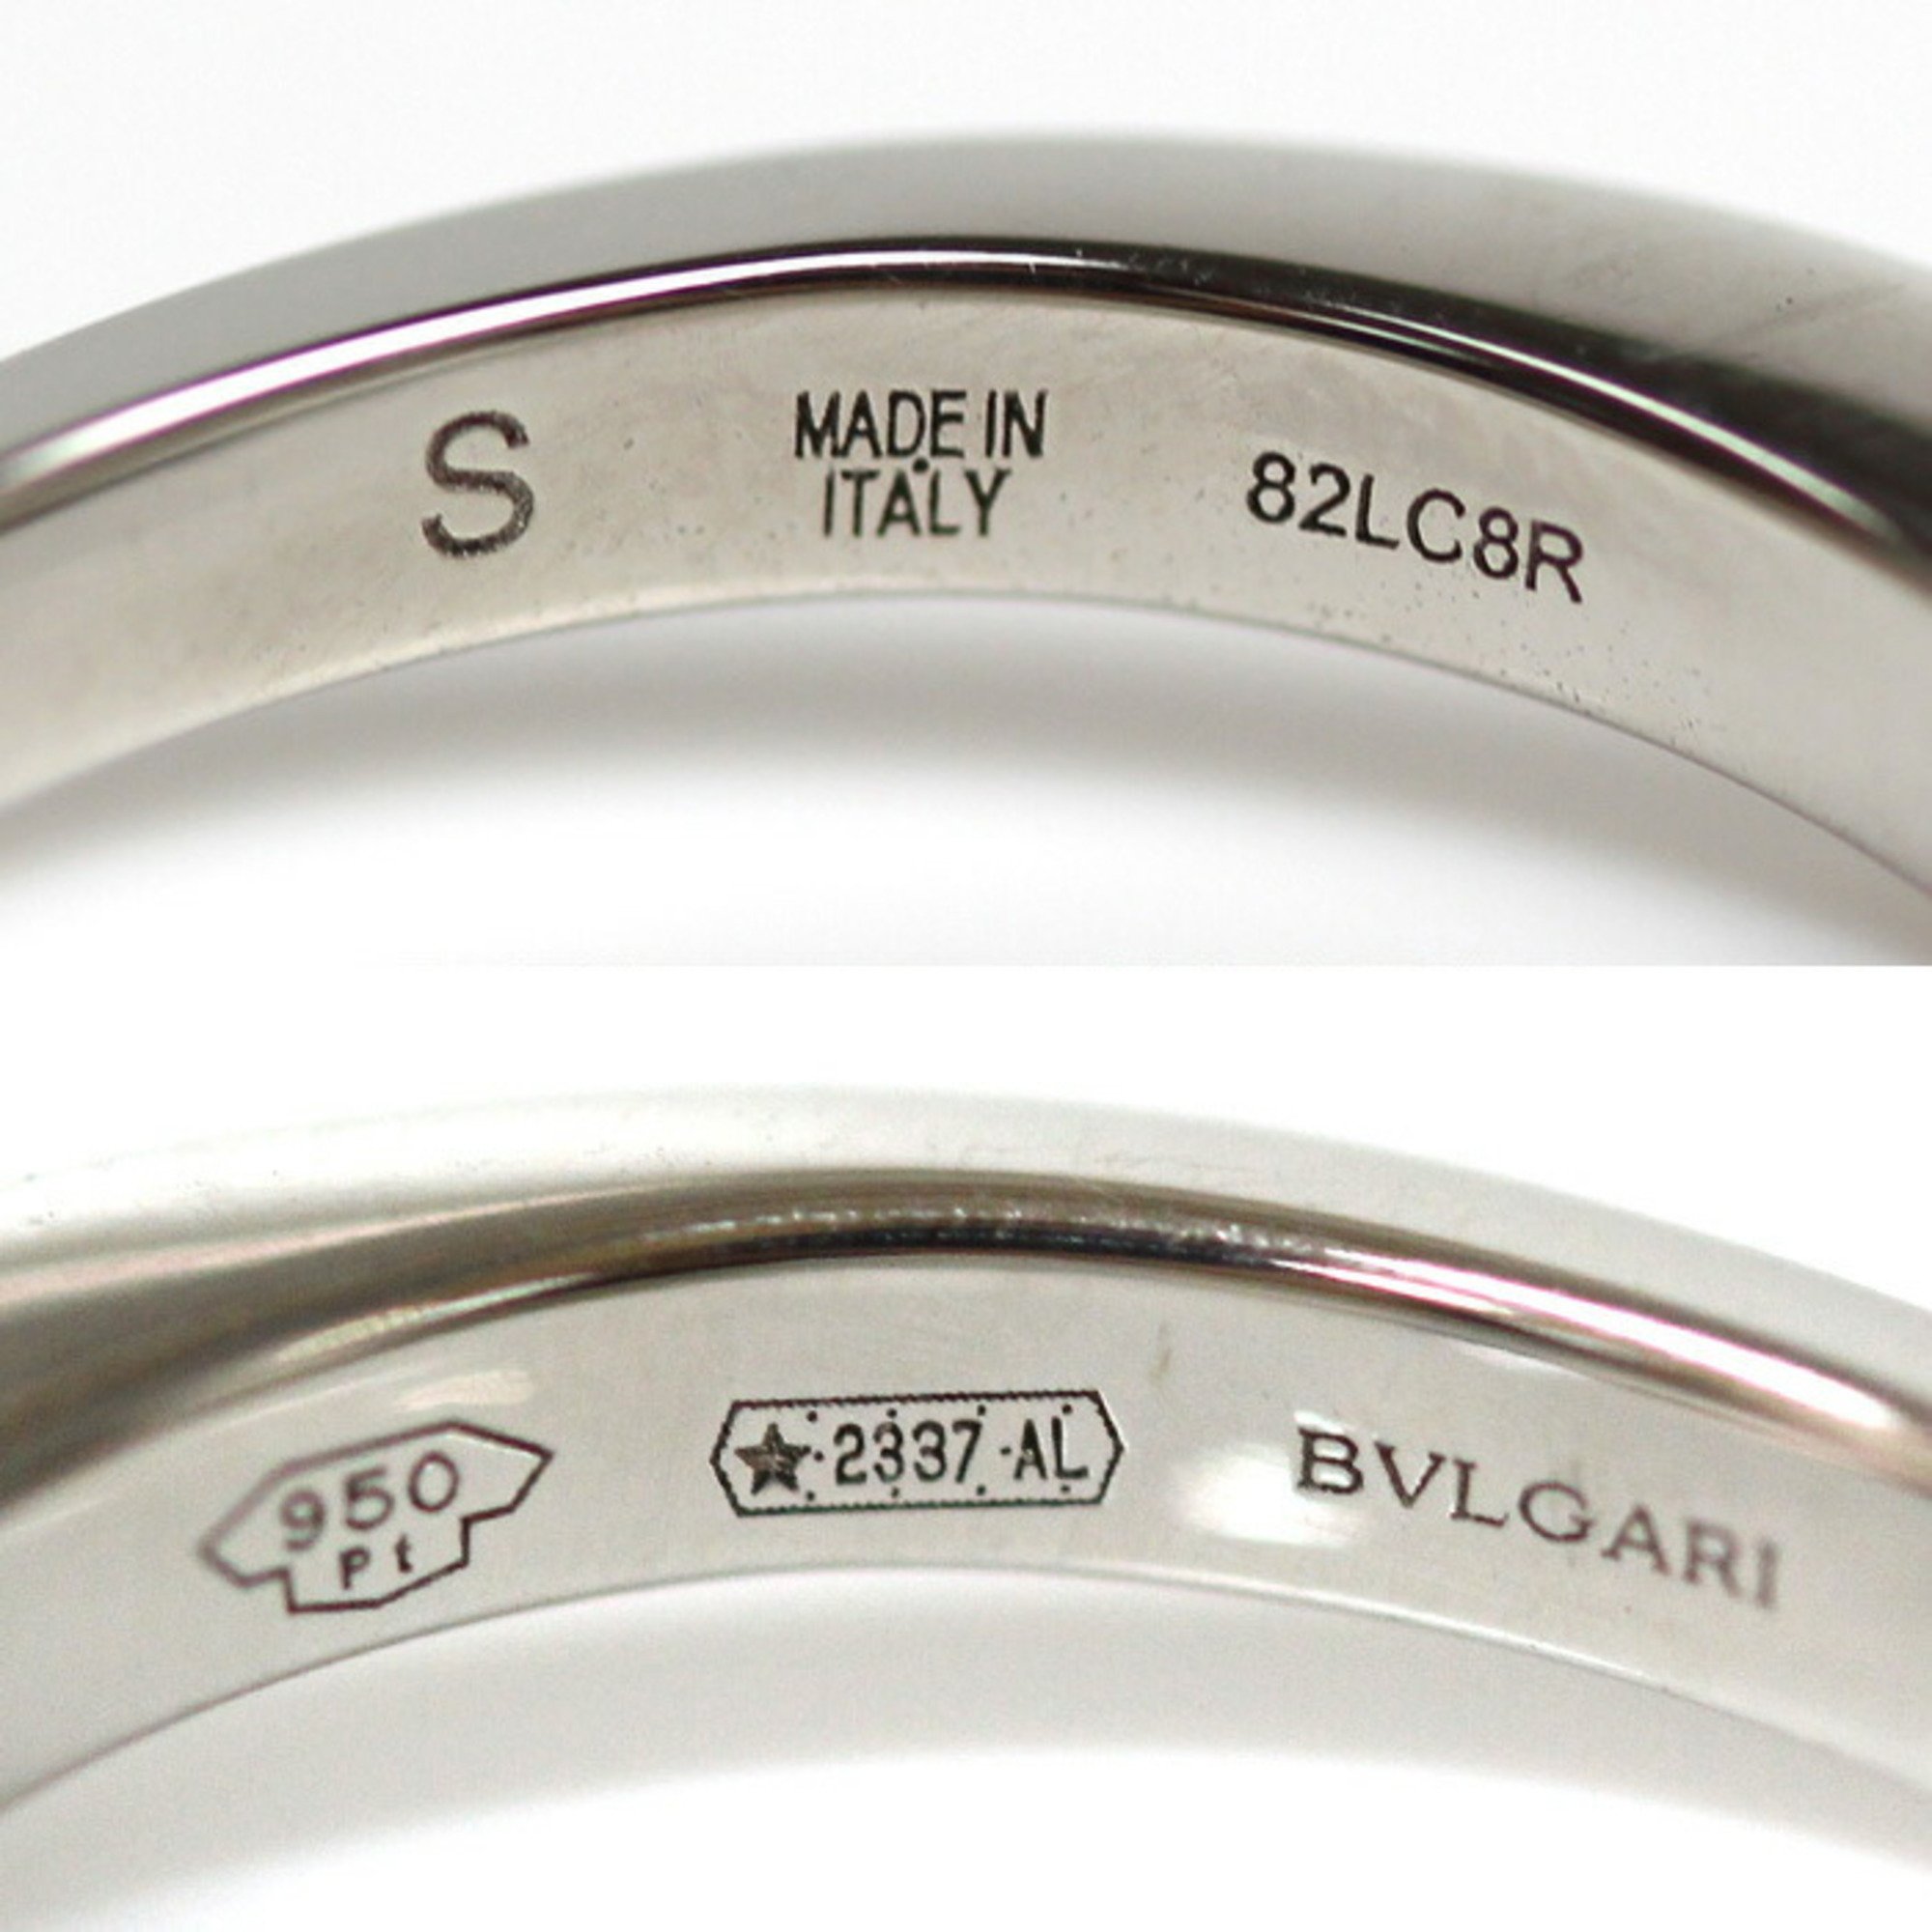 BVLGARI Bvlgari Pt950 Platinum Corona Diamond Ring, Diamond, Size 6, 3.4g, Women's